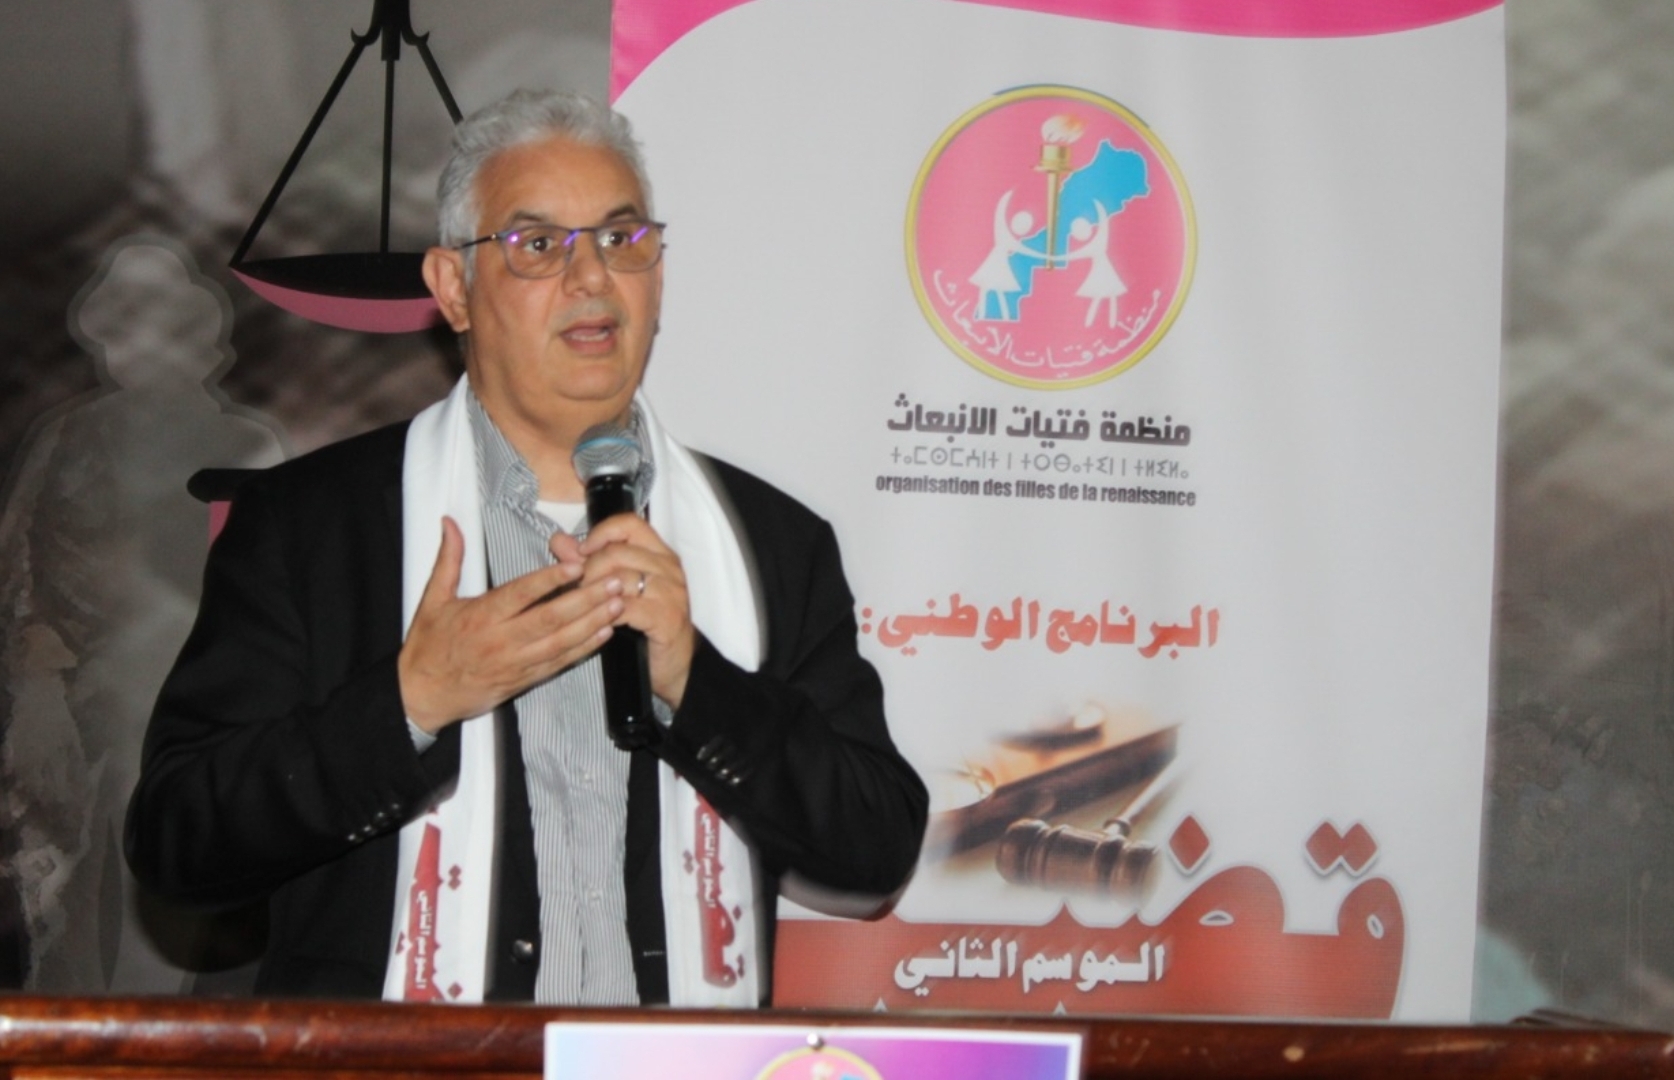 الأخ نزار بركة.. برنامج "قضيتي" ورش مفتوح لمراجعة ومناقشة قضايا الفتاة المغربية 